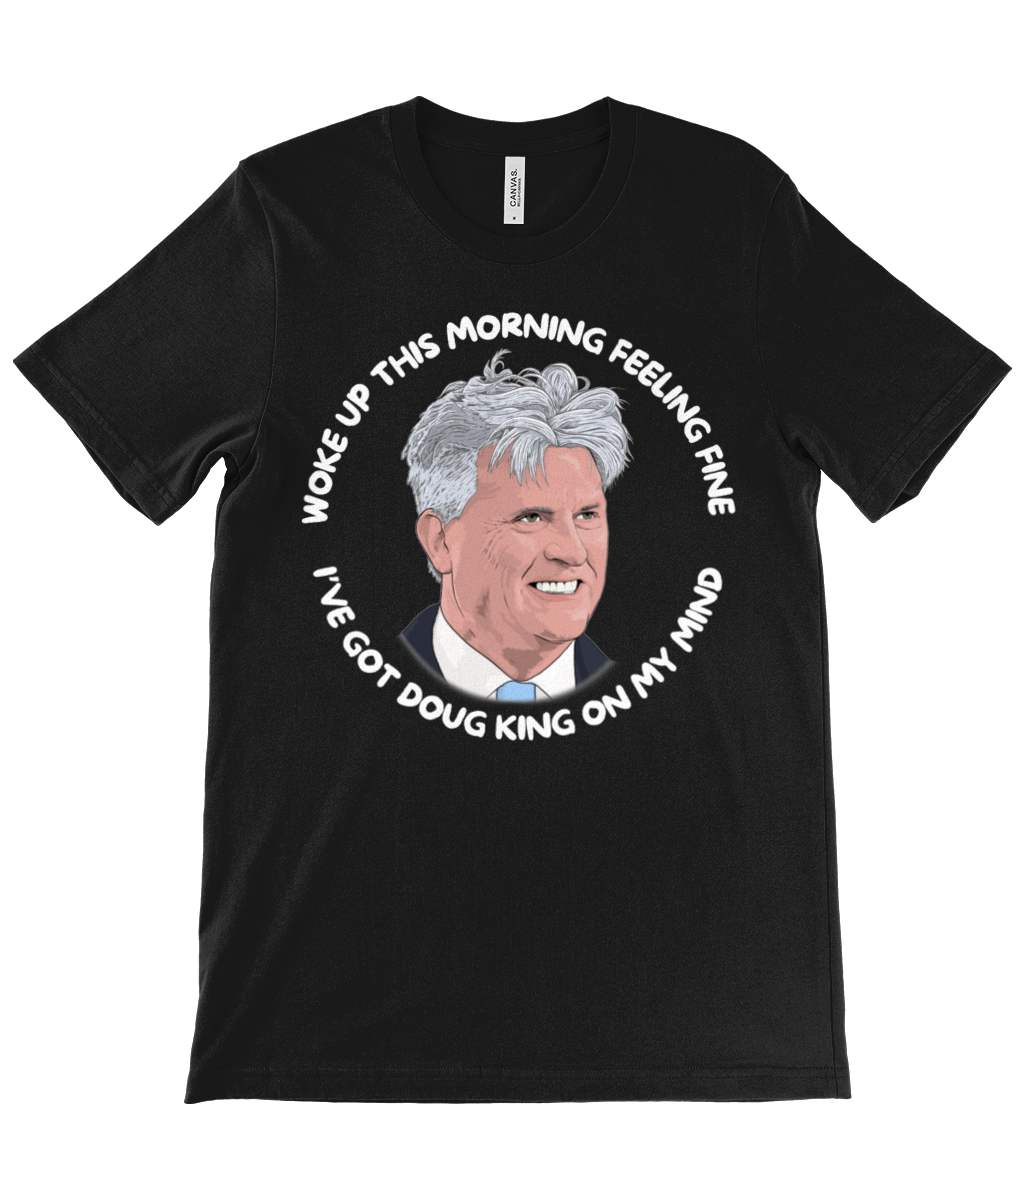 Doug King T-shirt (black)